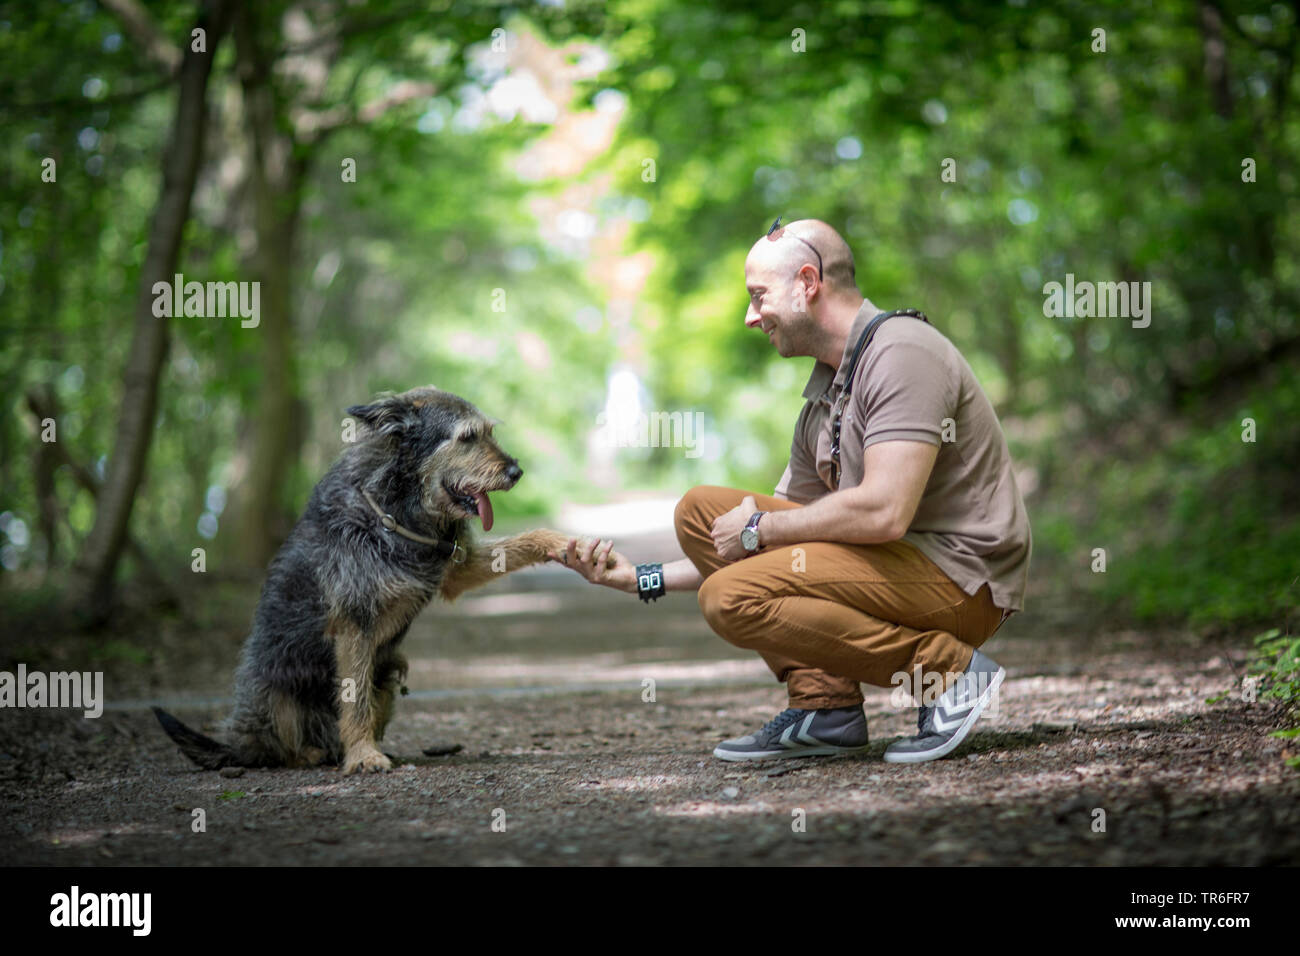 Berger de Picardie, Berger Picard (Canis lupus f. familiaris), cane zampa dando ad un uomo su un sentiero di bosco, Germania Foto Stock